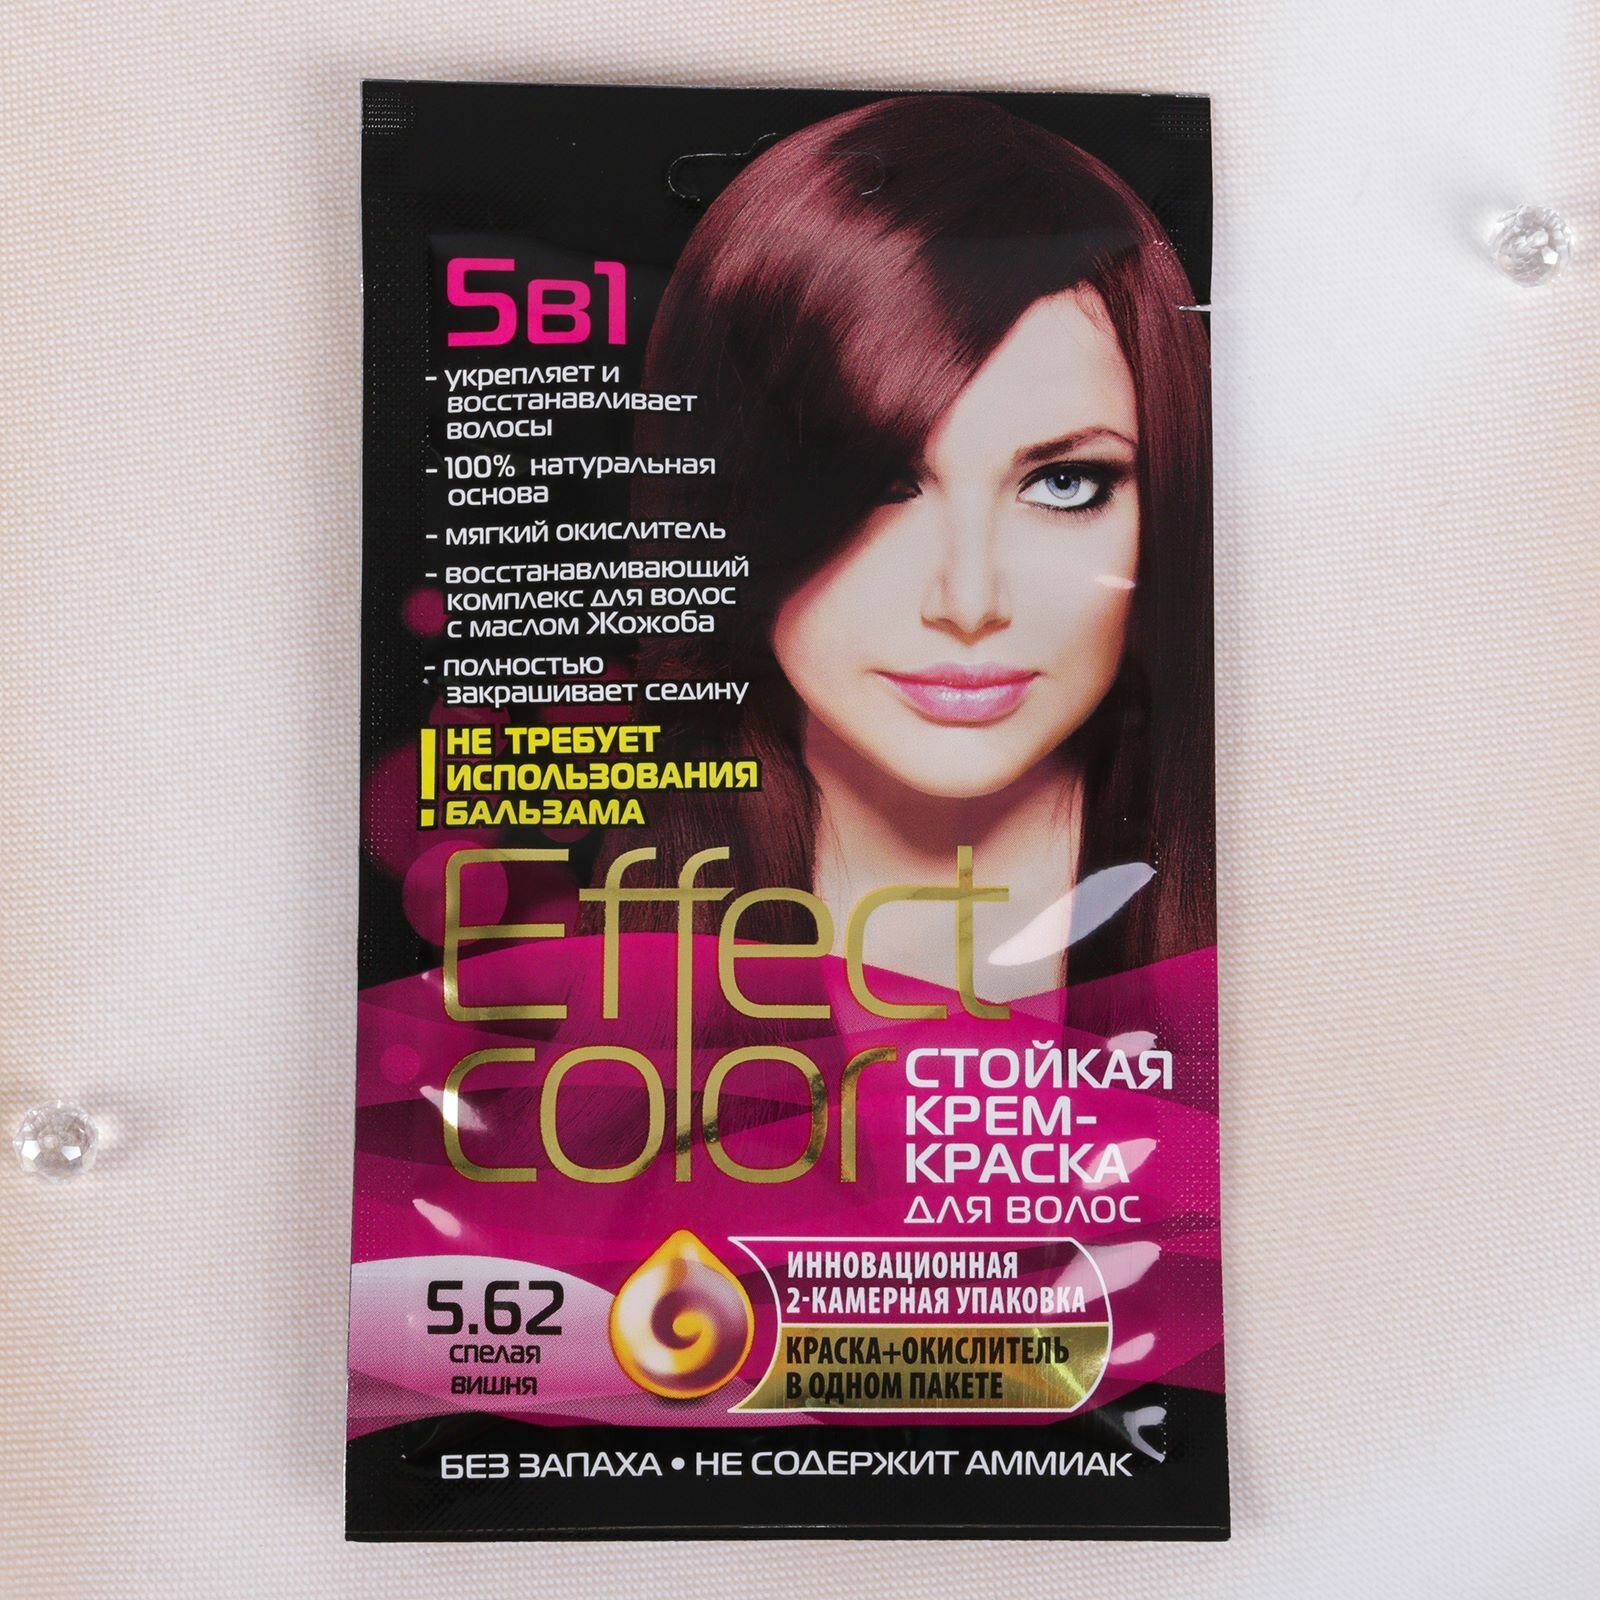 Fito косметик Effect Сolor стойкая крем-краска для волос, 5.62 спелая вишня, 50 мл